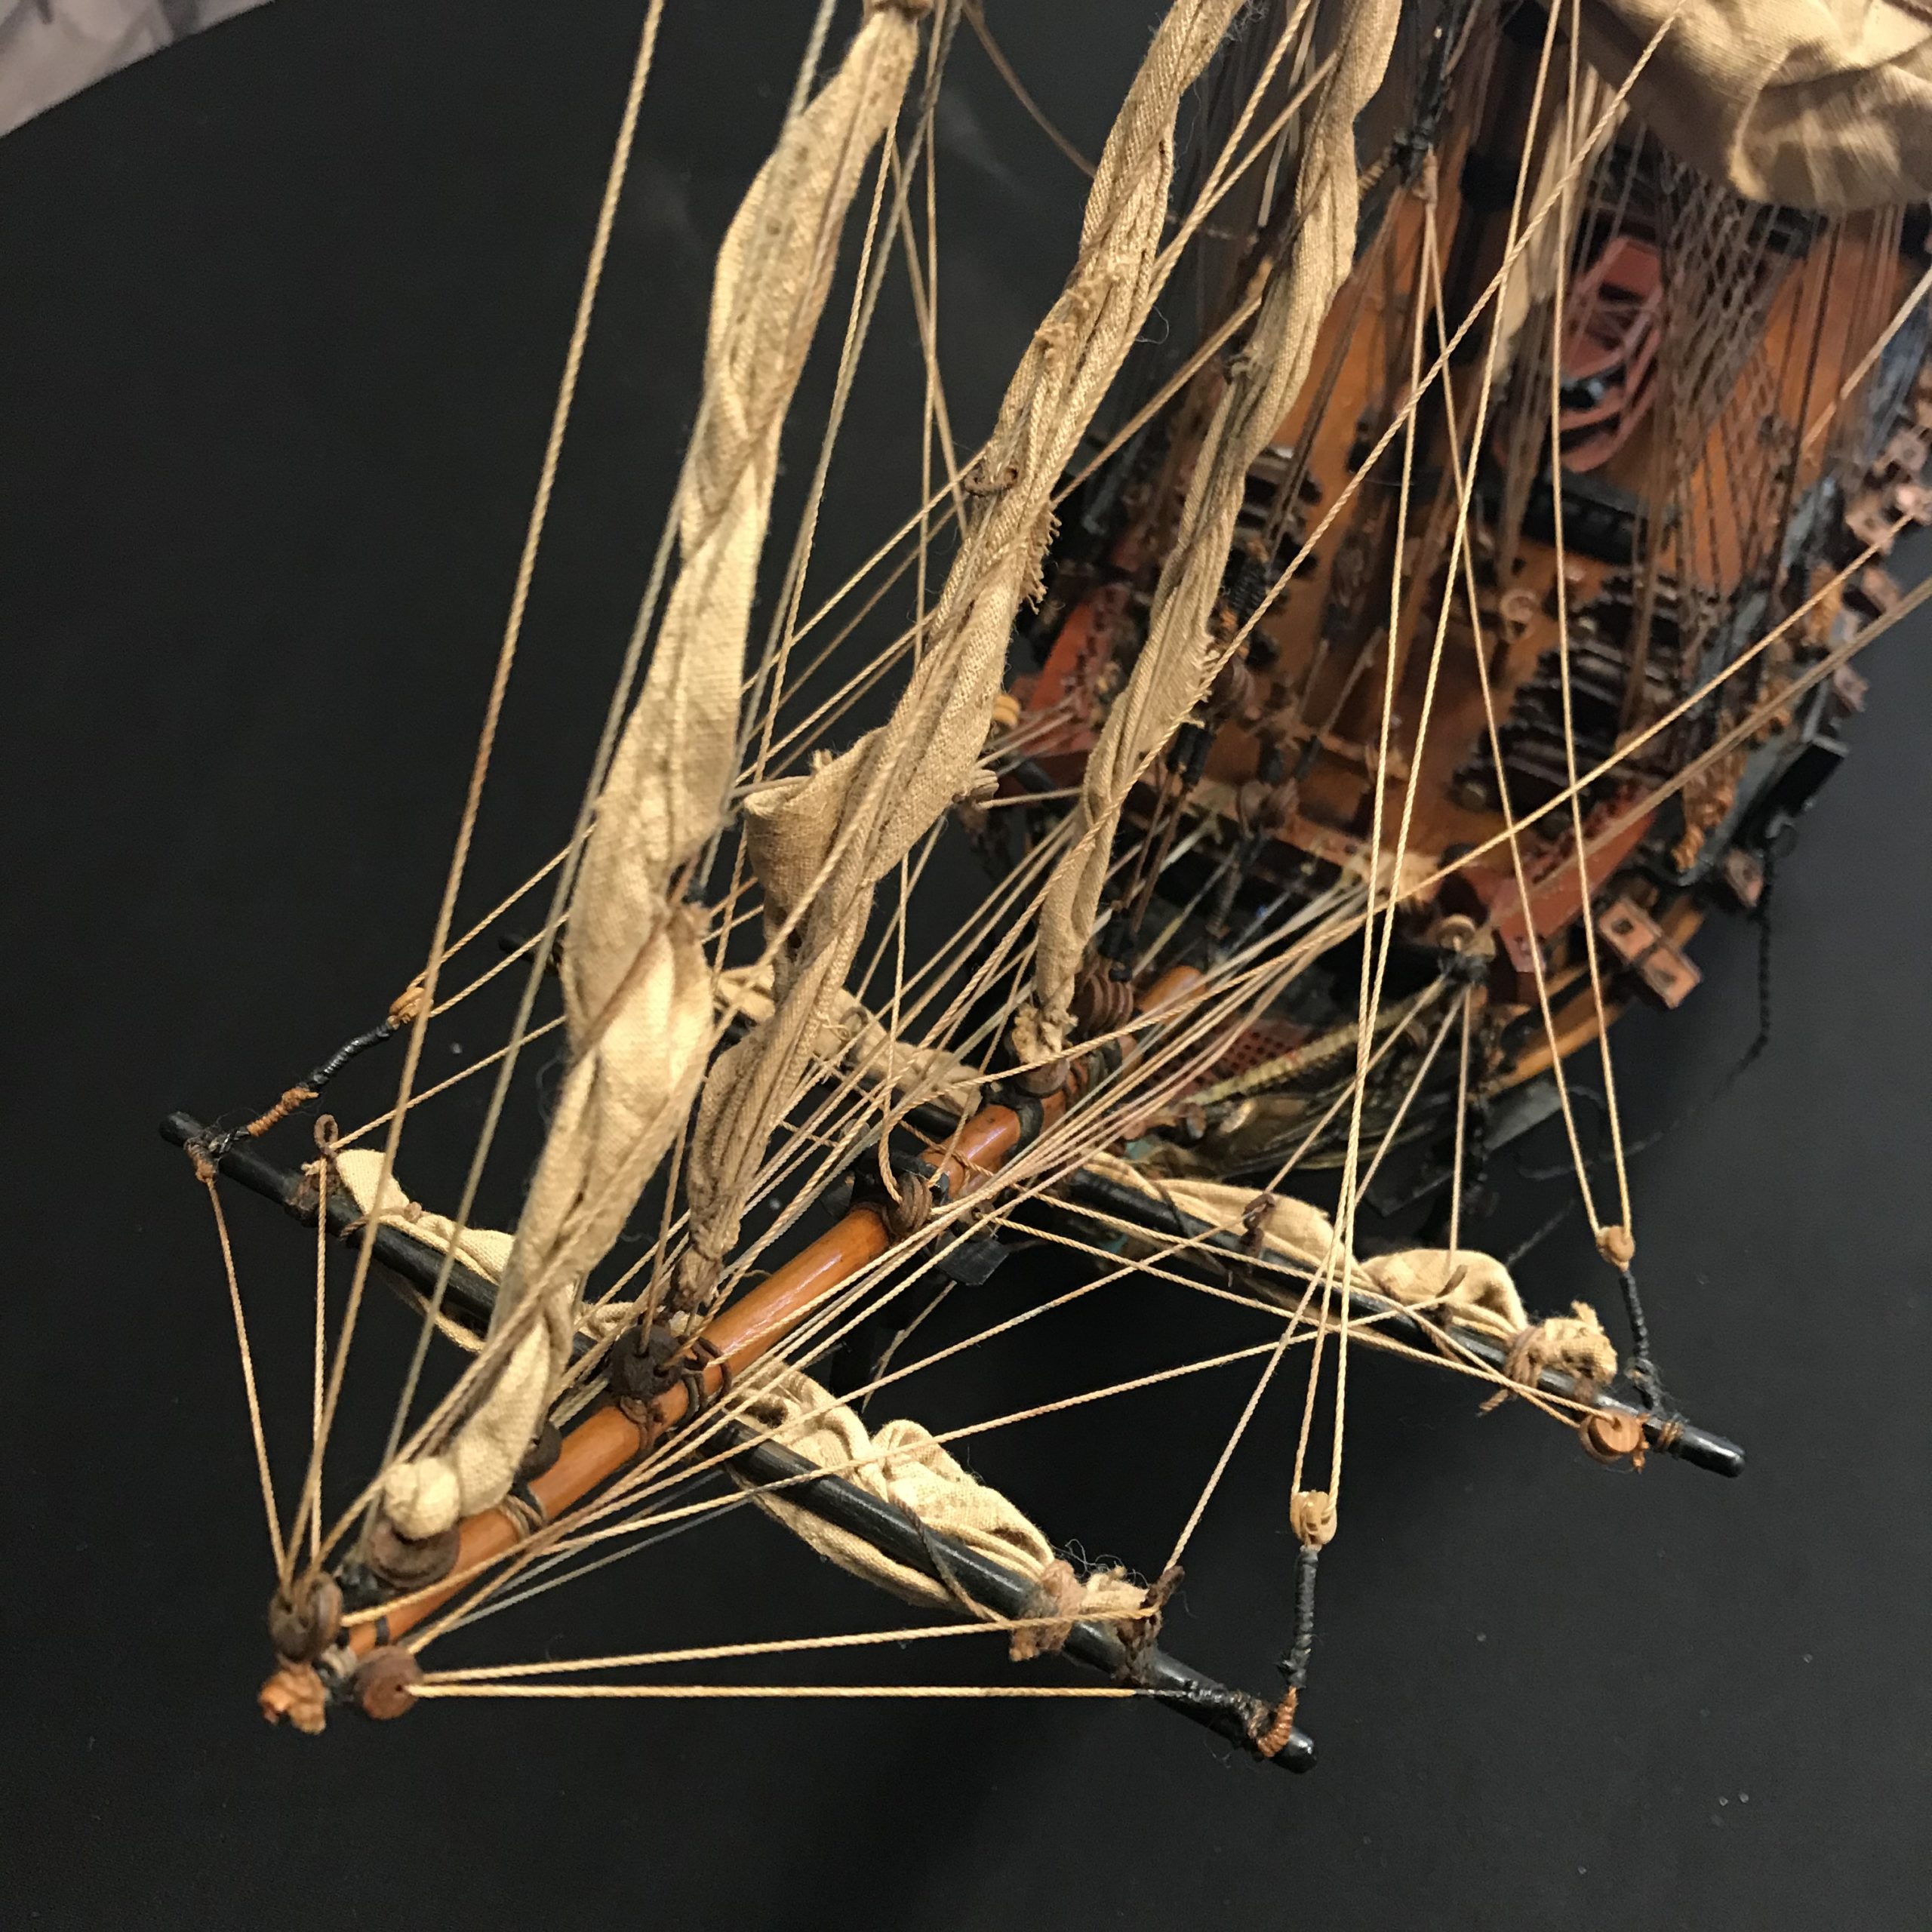 Le Superbe Maquette du voilier historique en bois tropical 19e, restauration atelier Patrice Bricout label EPV